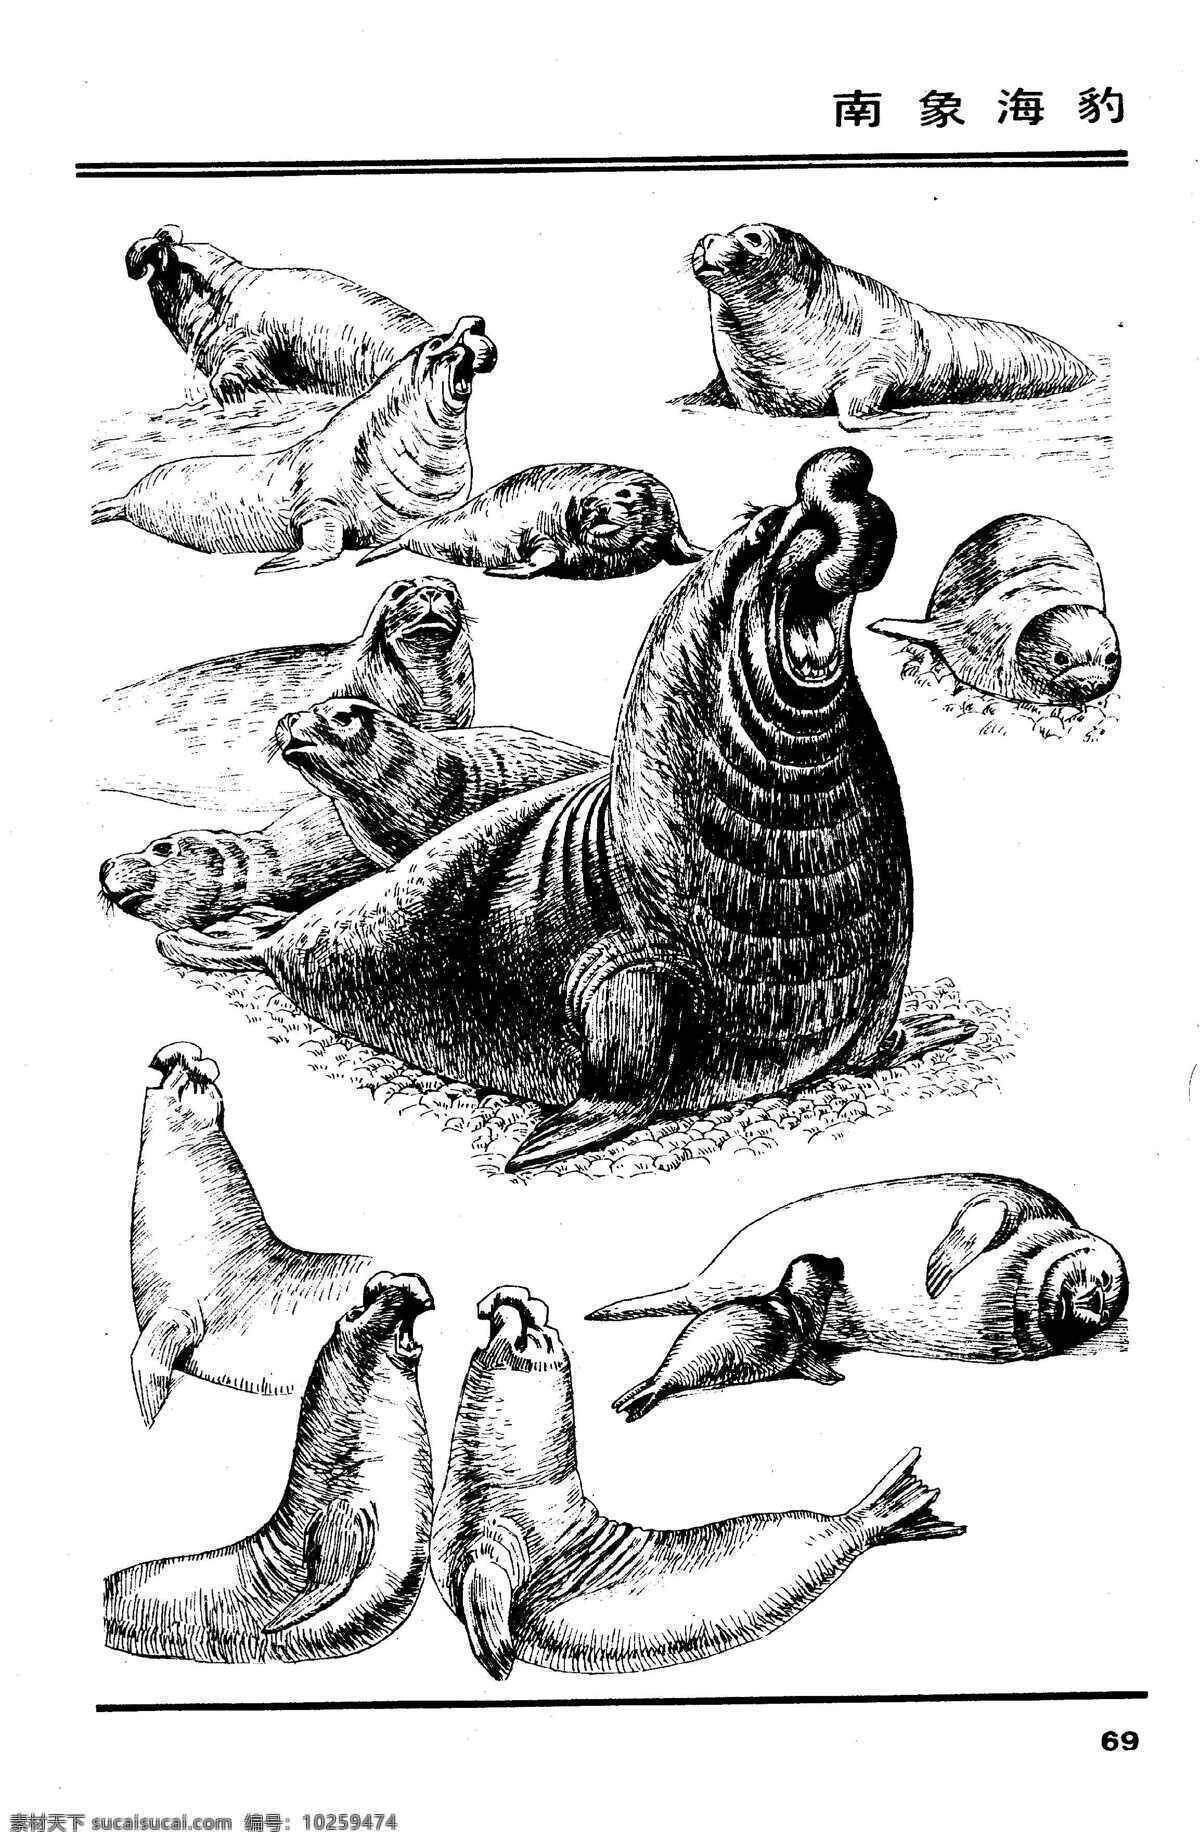 画兽谱 南象 海狮 百兽 兽 家禽 猛兽 动物 白描 线描 绘画 美术 禽兽 野生动物 象 狮 海洋动物 生物世界 设计图库